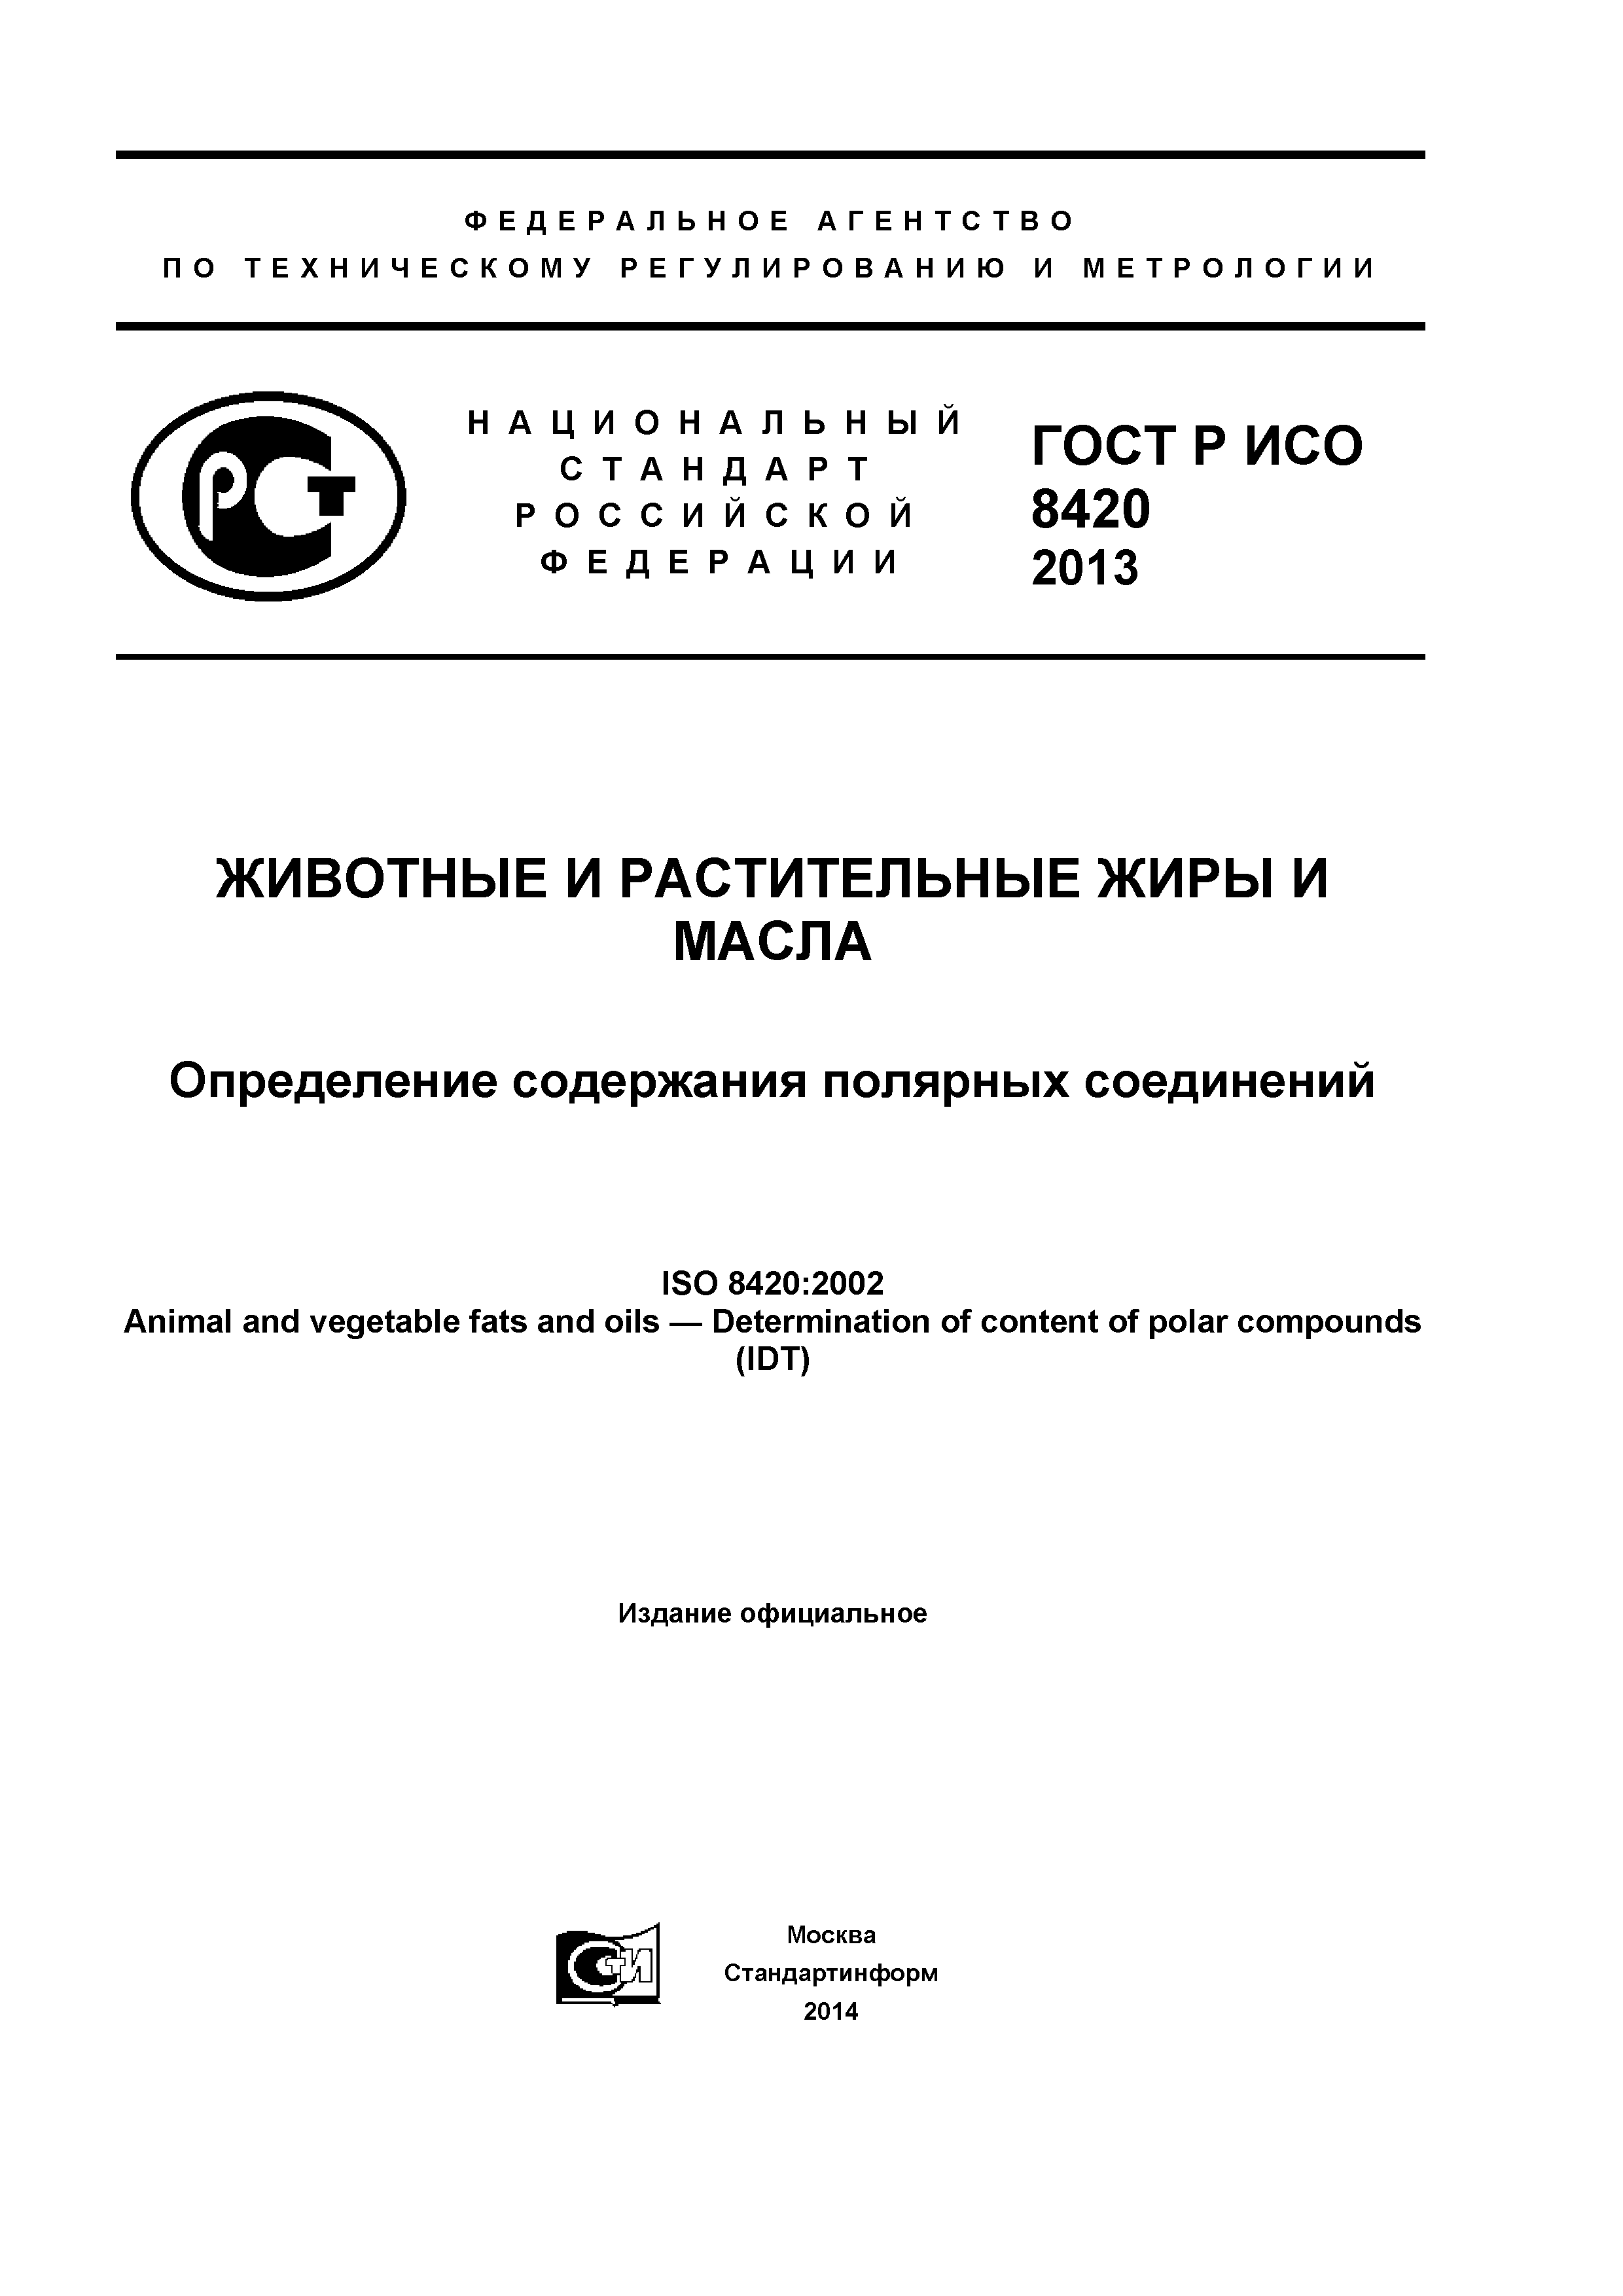 ГОСТ Р ИСО 8420-2013